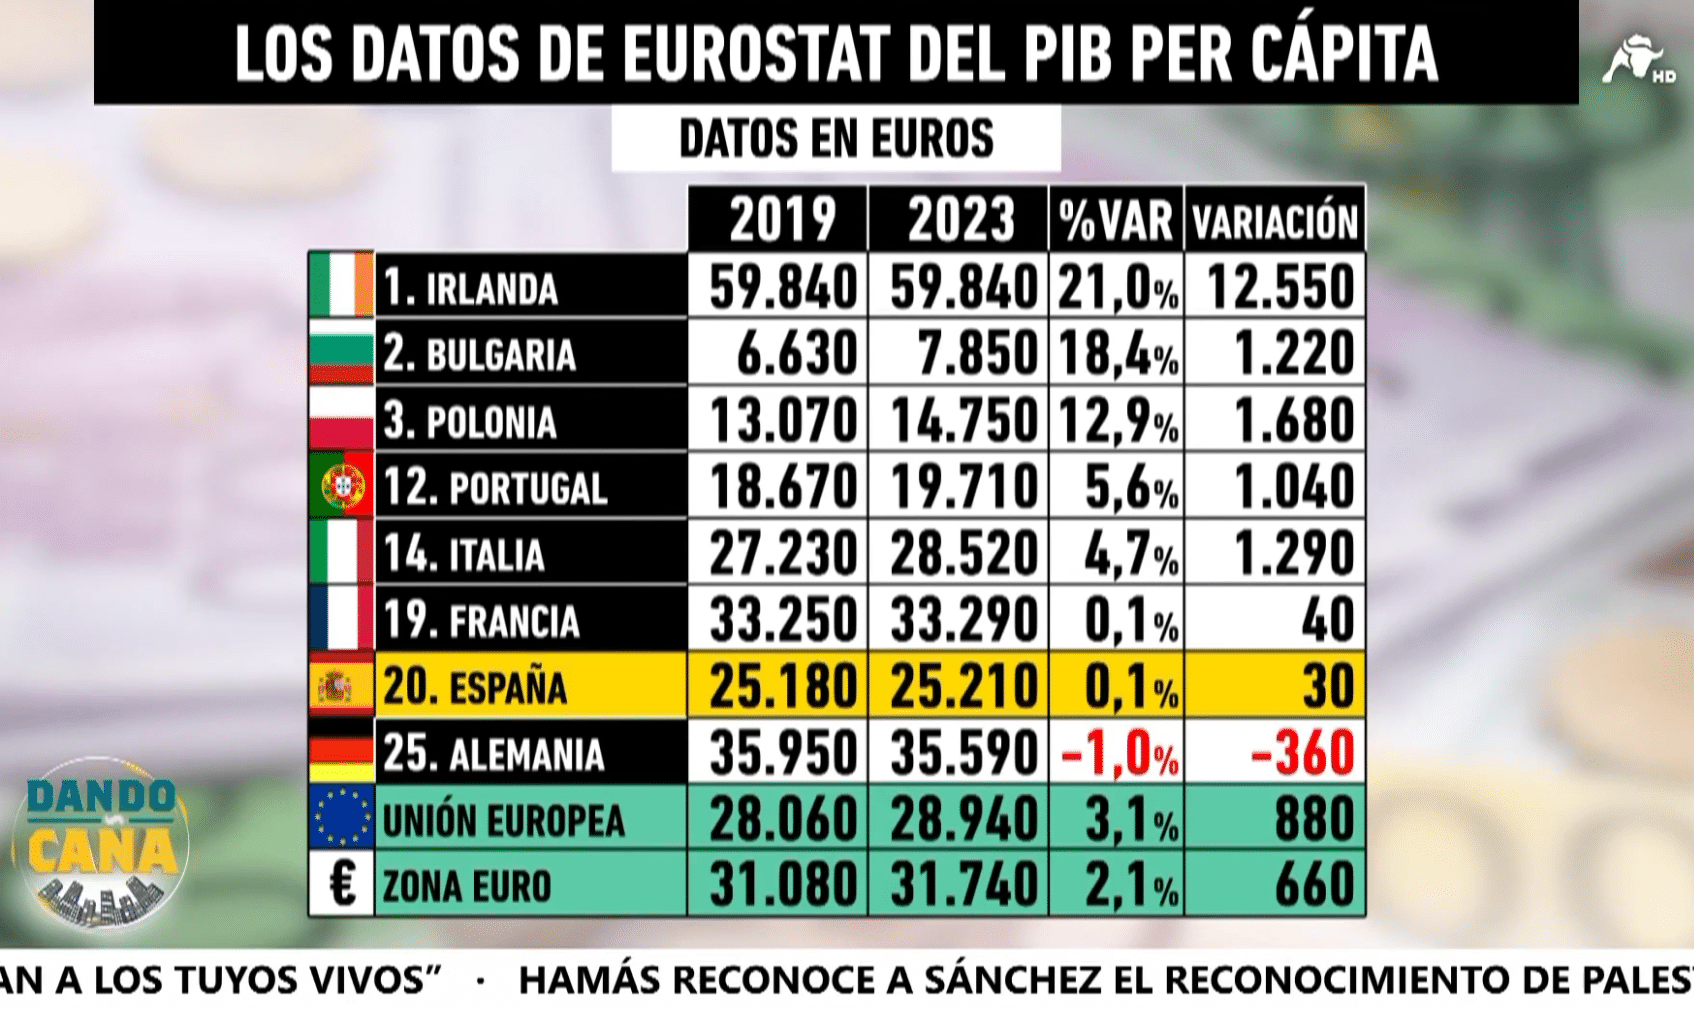 La capacidad adquisitiva de los españoles sólo crece 30 euros en cuatro años mientras nos crujen con más impuestos